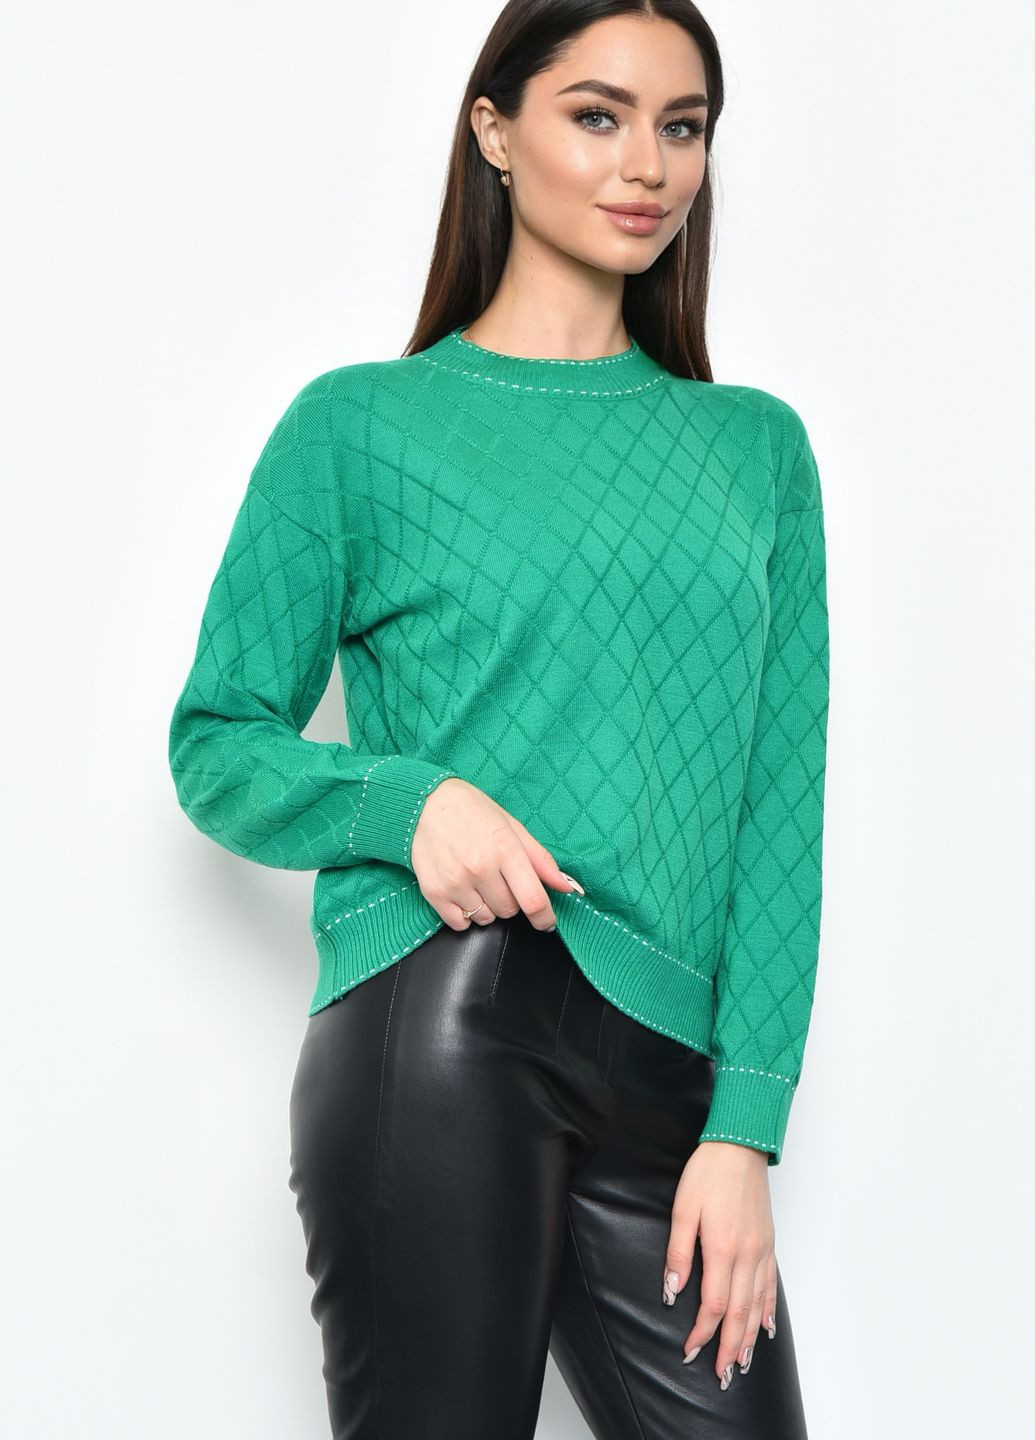 Зеленый демисезонный свитер женский зеленого цвета пуловер Let's Shop